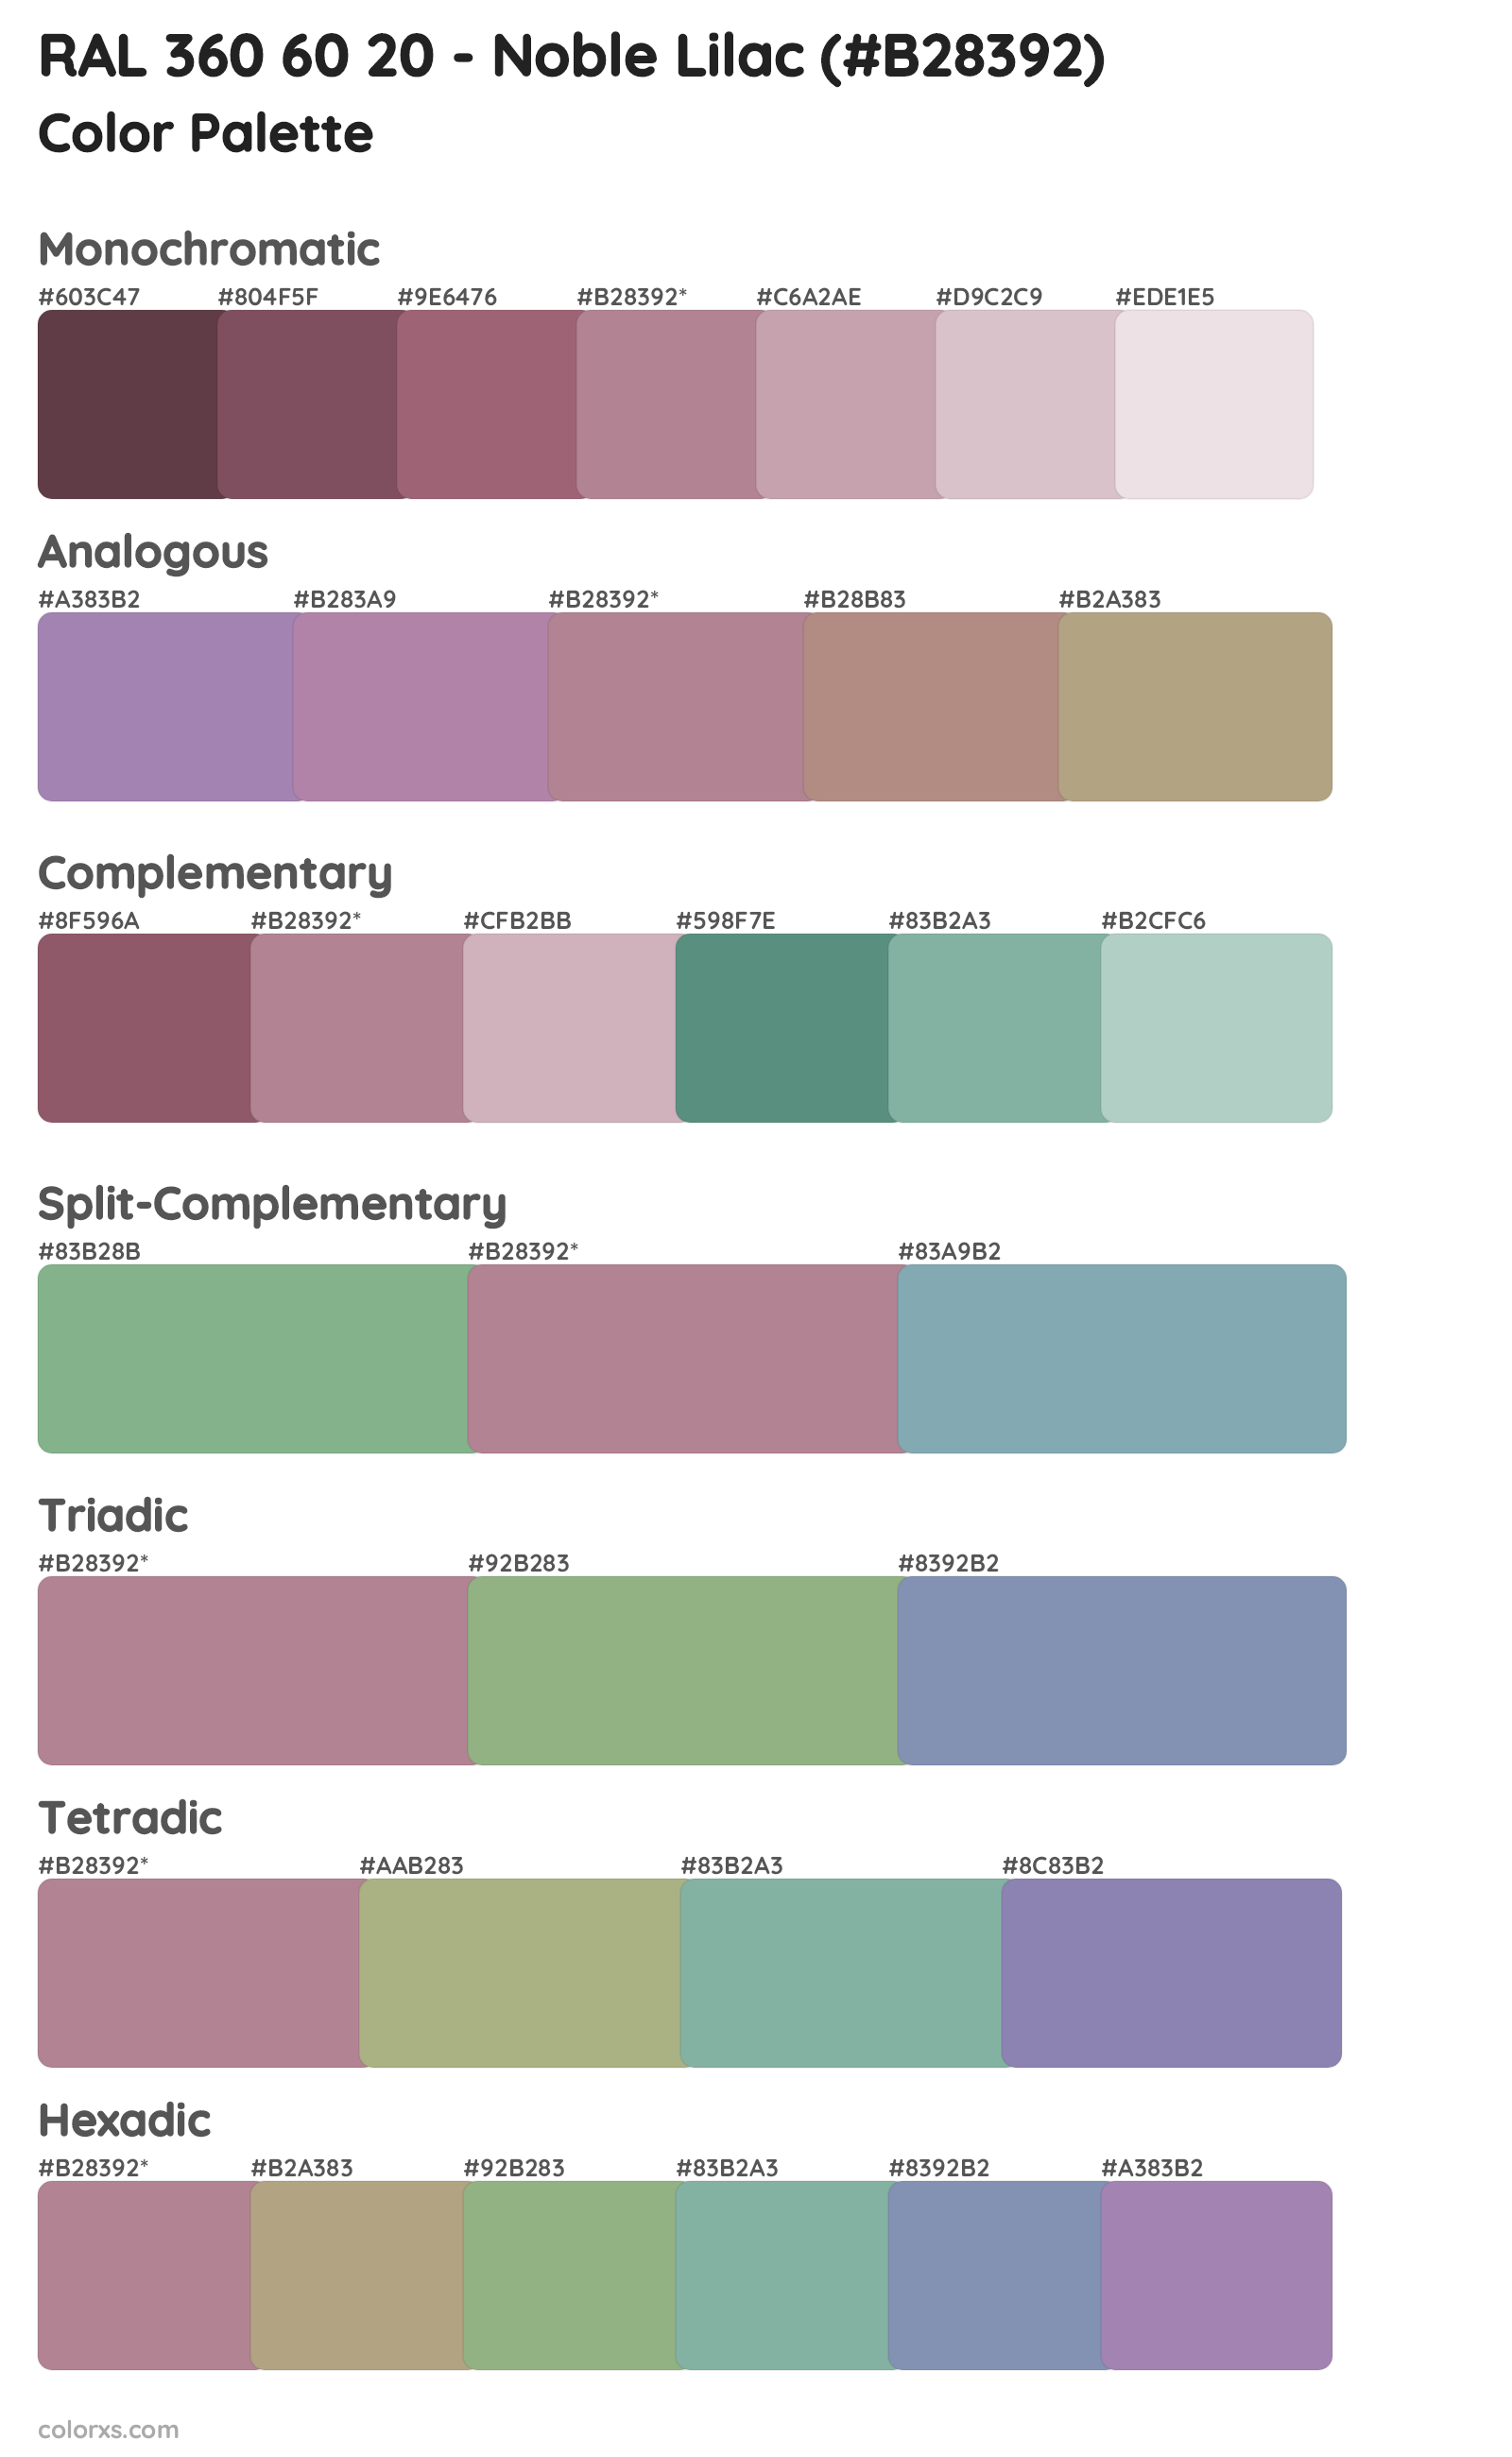 RAL 360 60 20 - Noble Lilac Color Scheme Palettes